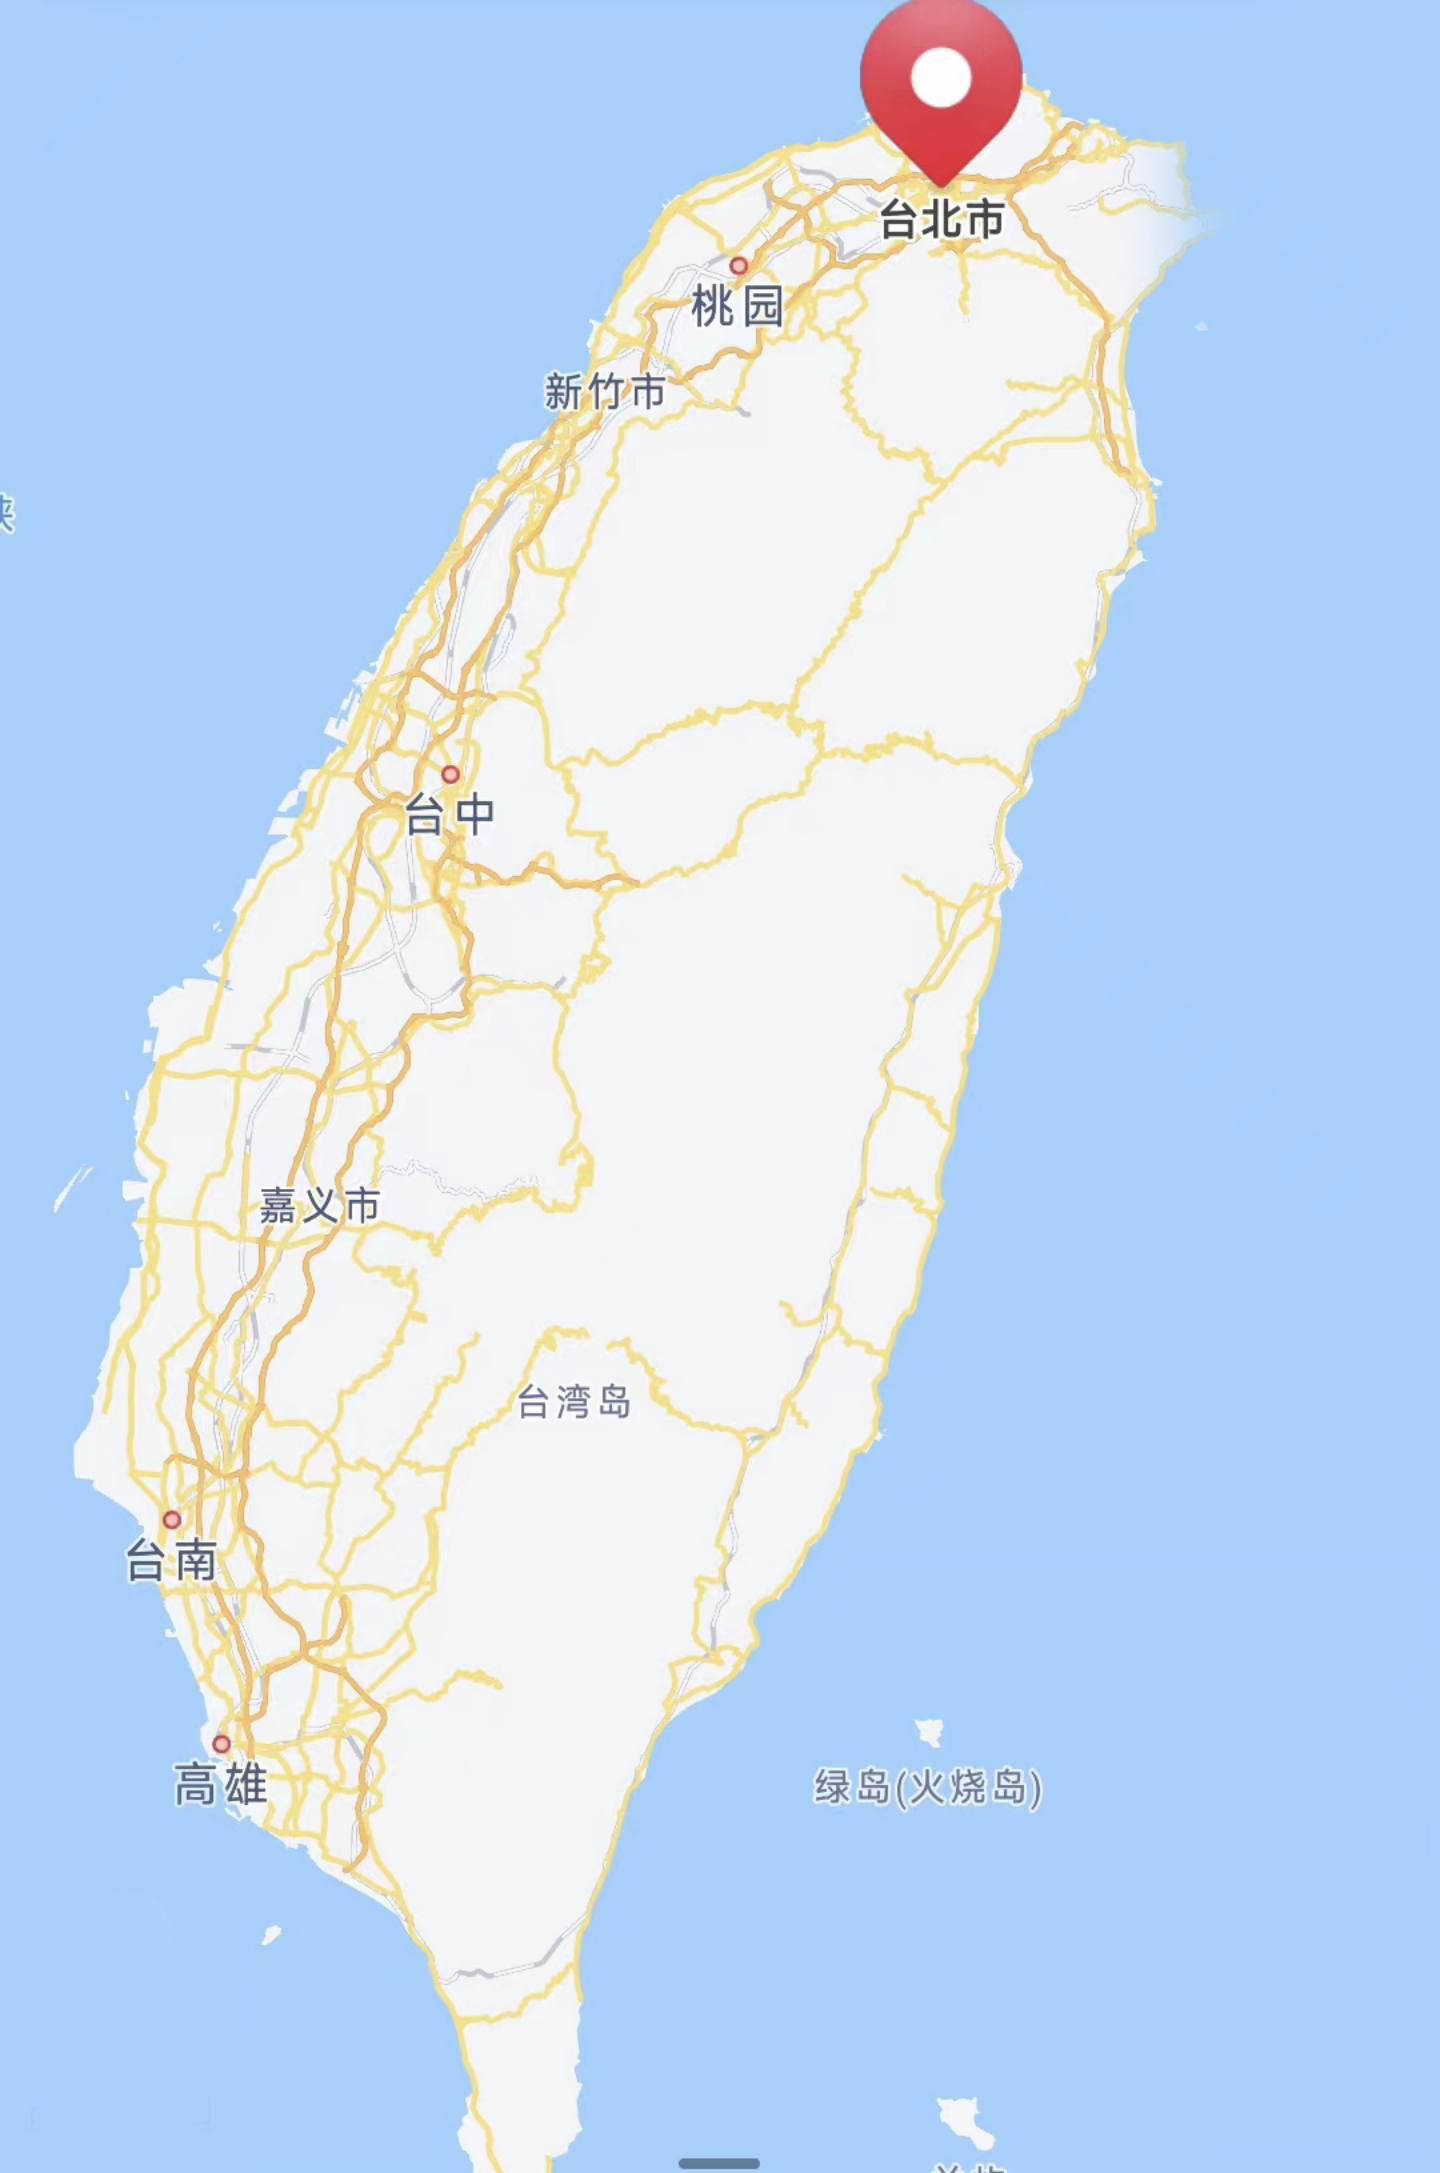 (台湾省地图)